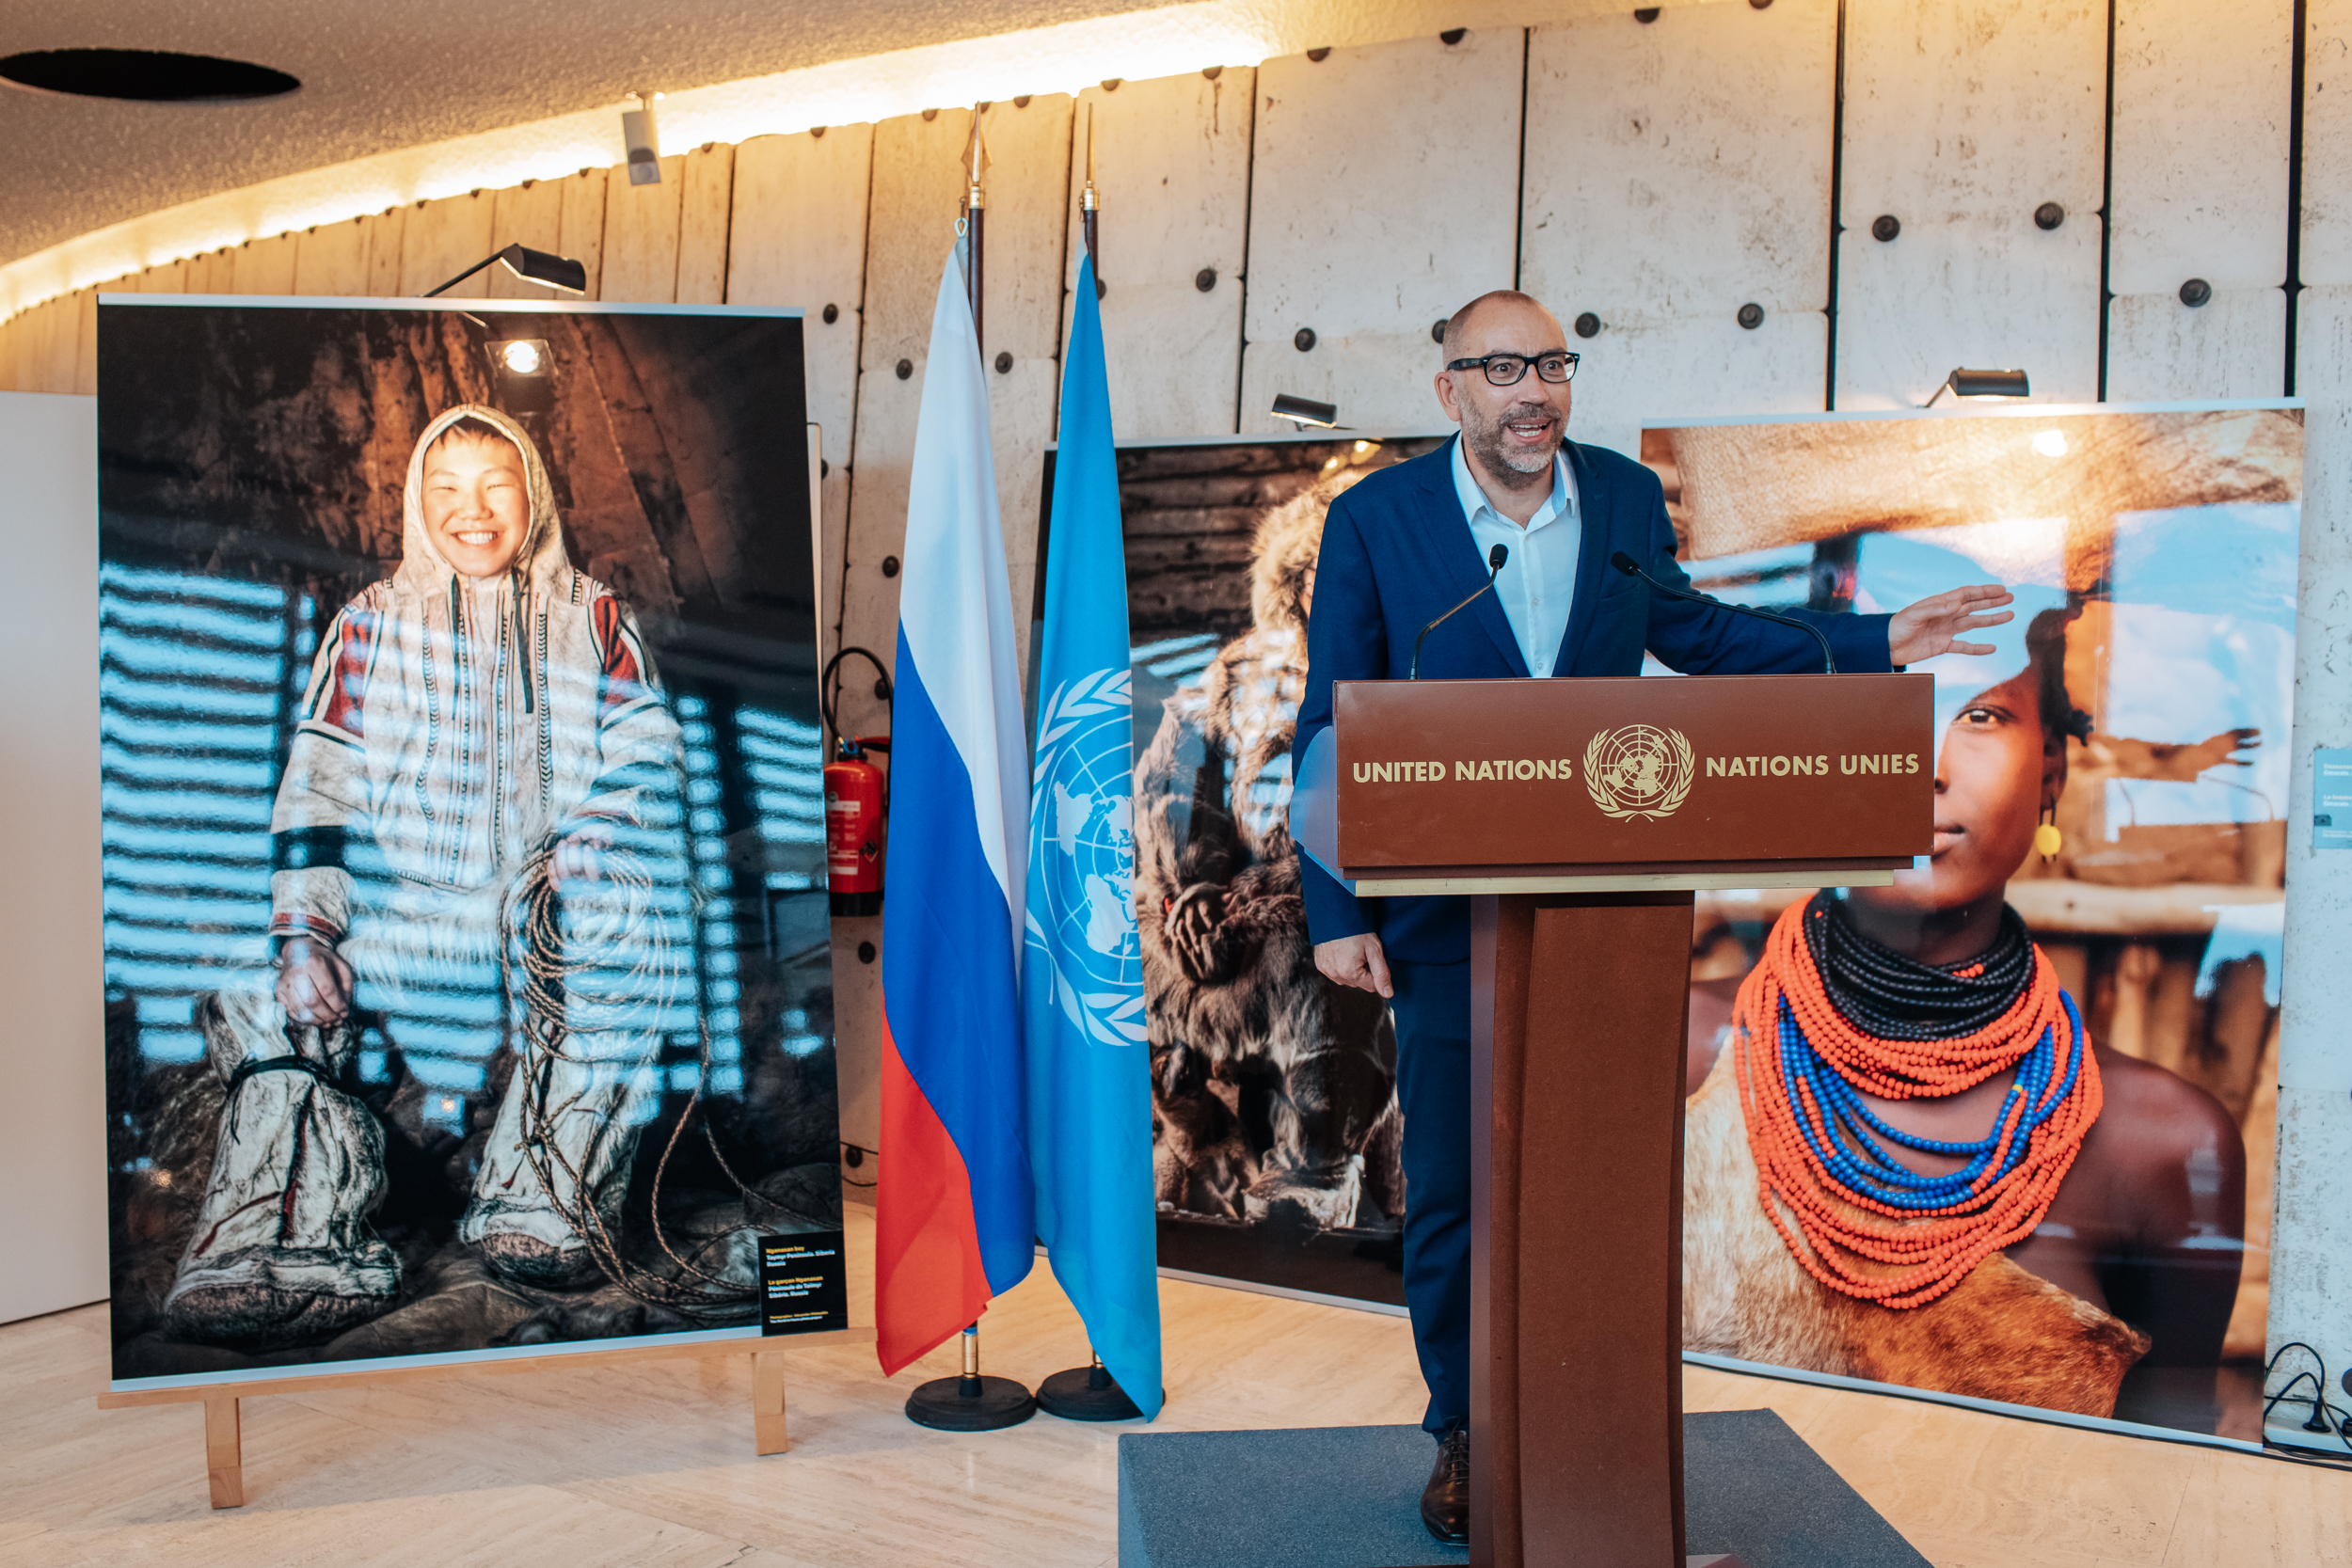 Российский фотограф Александр Химушин показал фотопортреты представителей коренных народов в Отделении ООН в Женеве